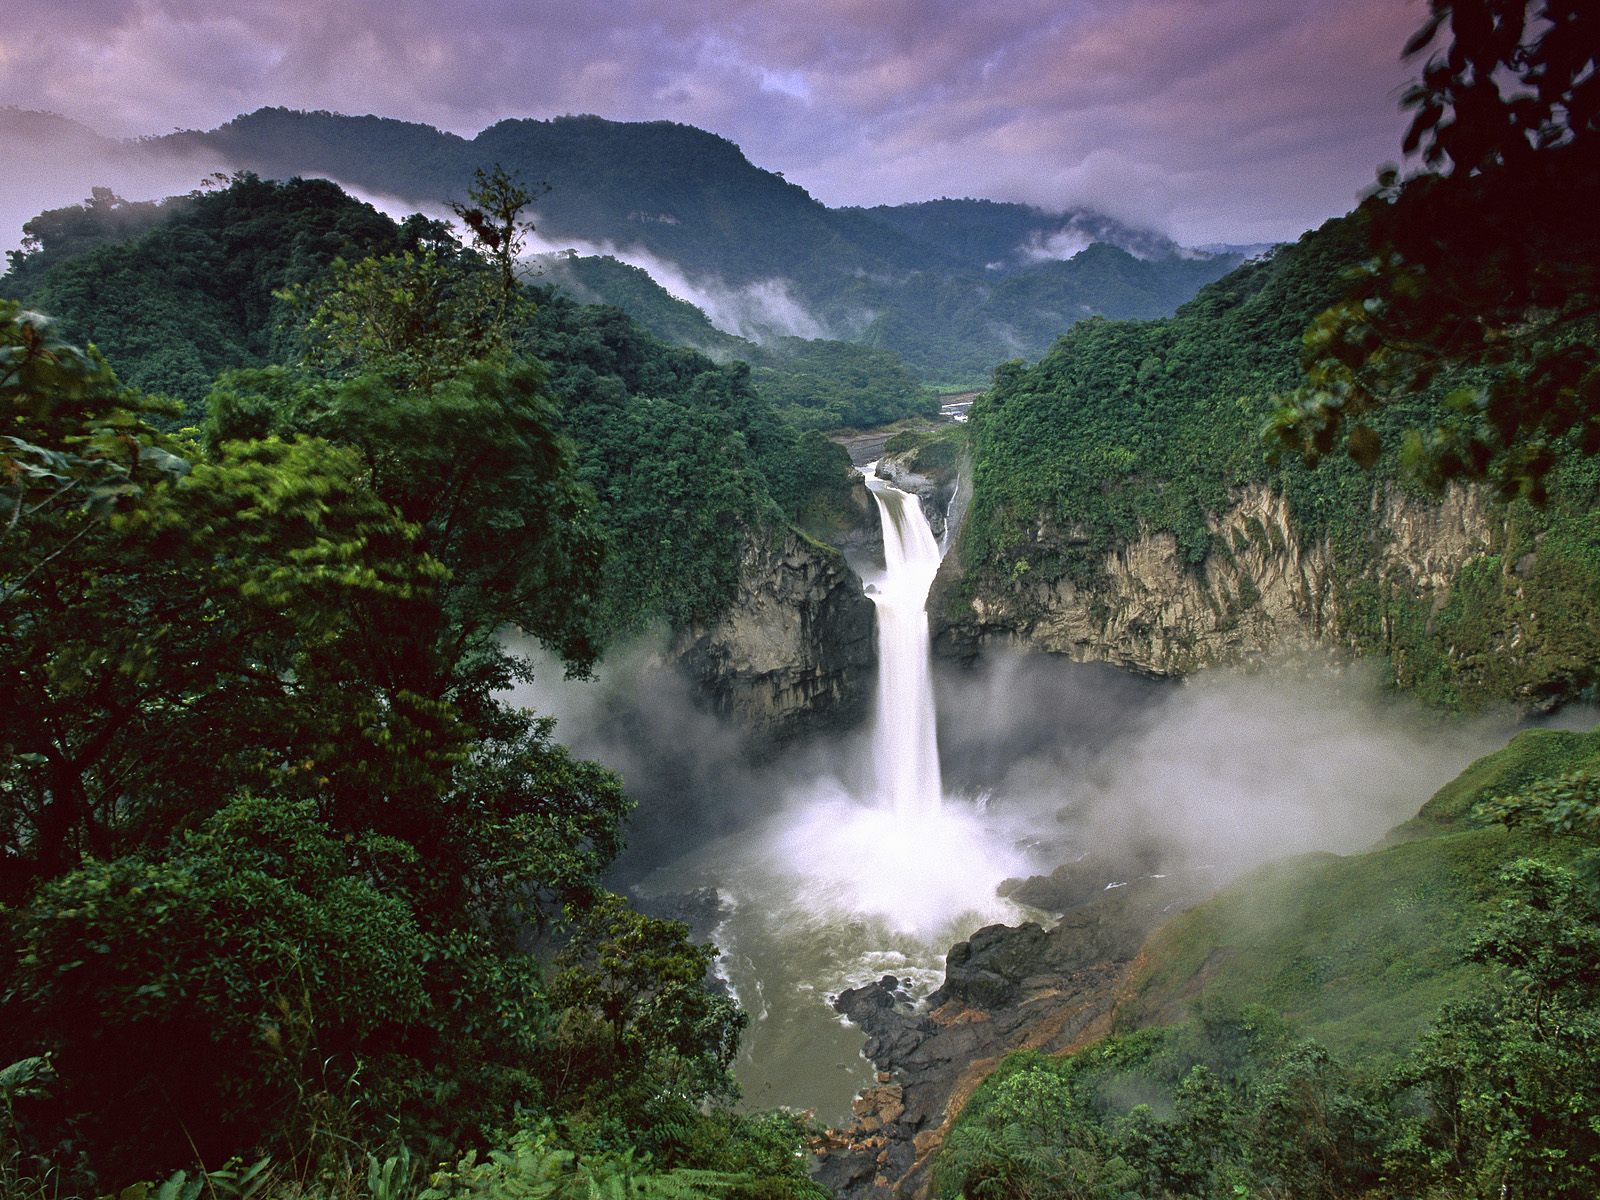 Yasuni Park in the Amazon Rainforest